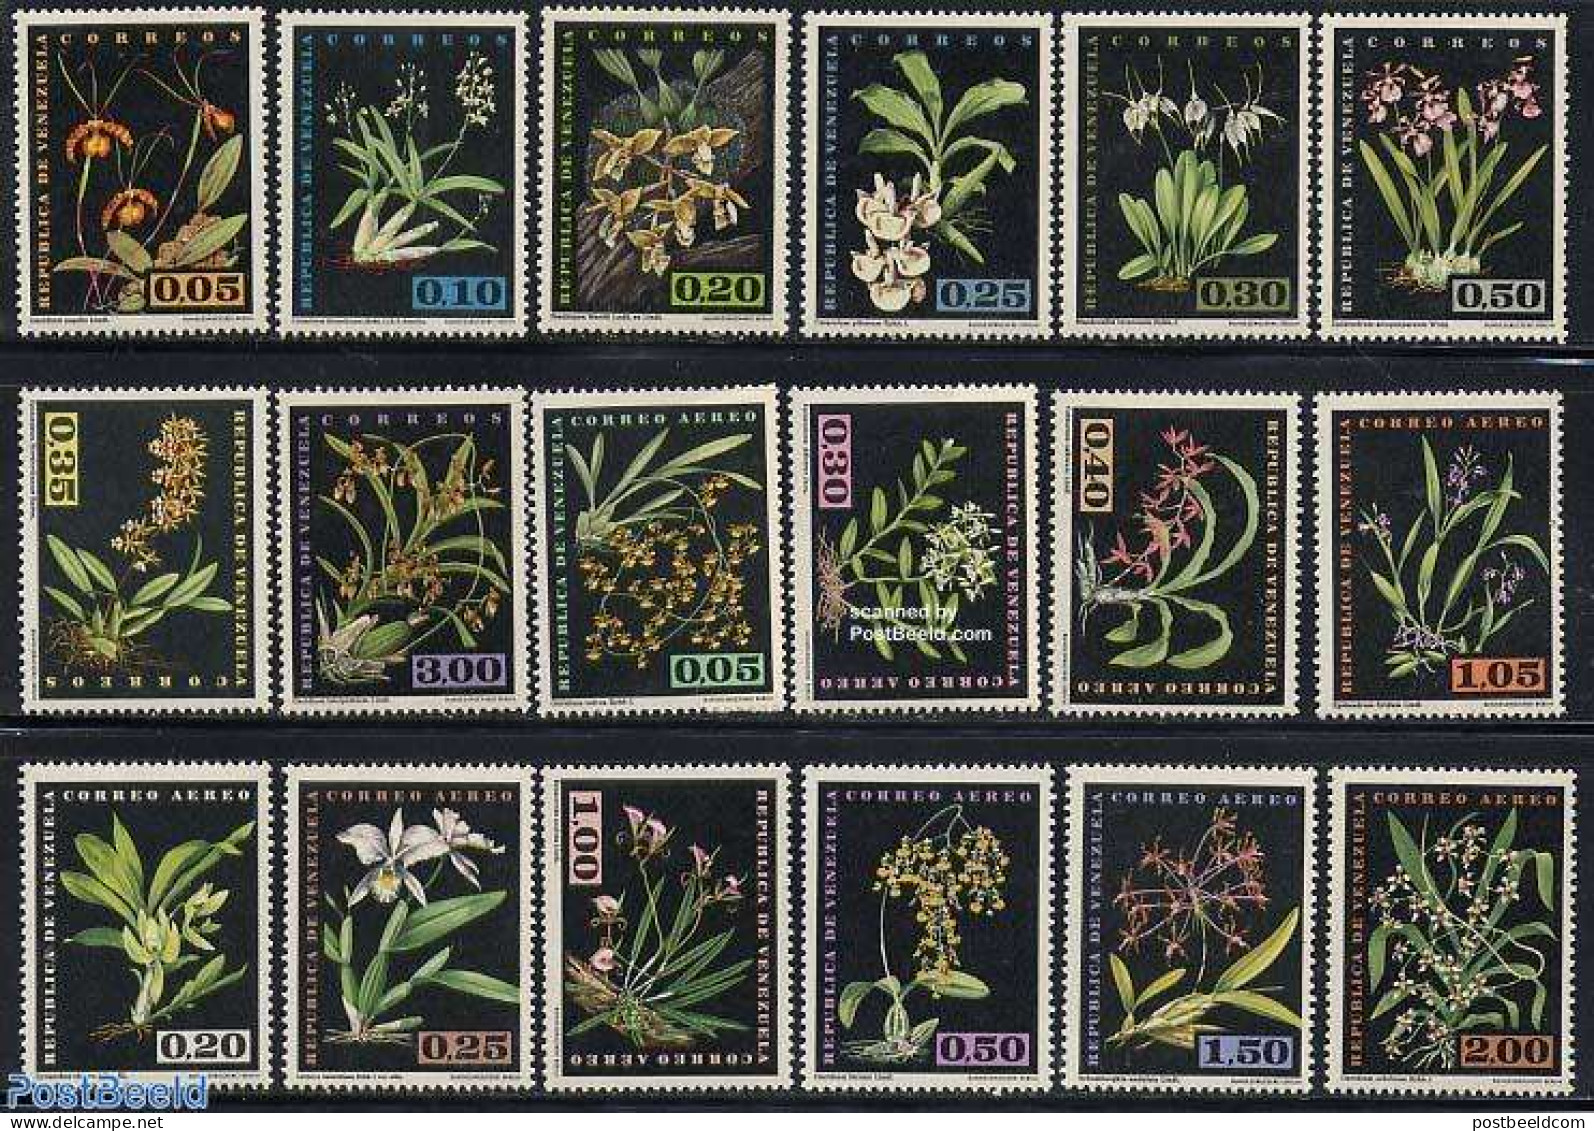 Venezuela 1962 Indigenous Orchids 18v, Mint NH, Nature - Flowers & Plants - Orchids - Venezuela